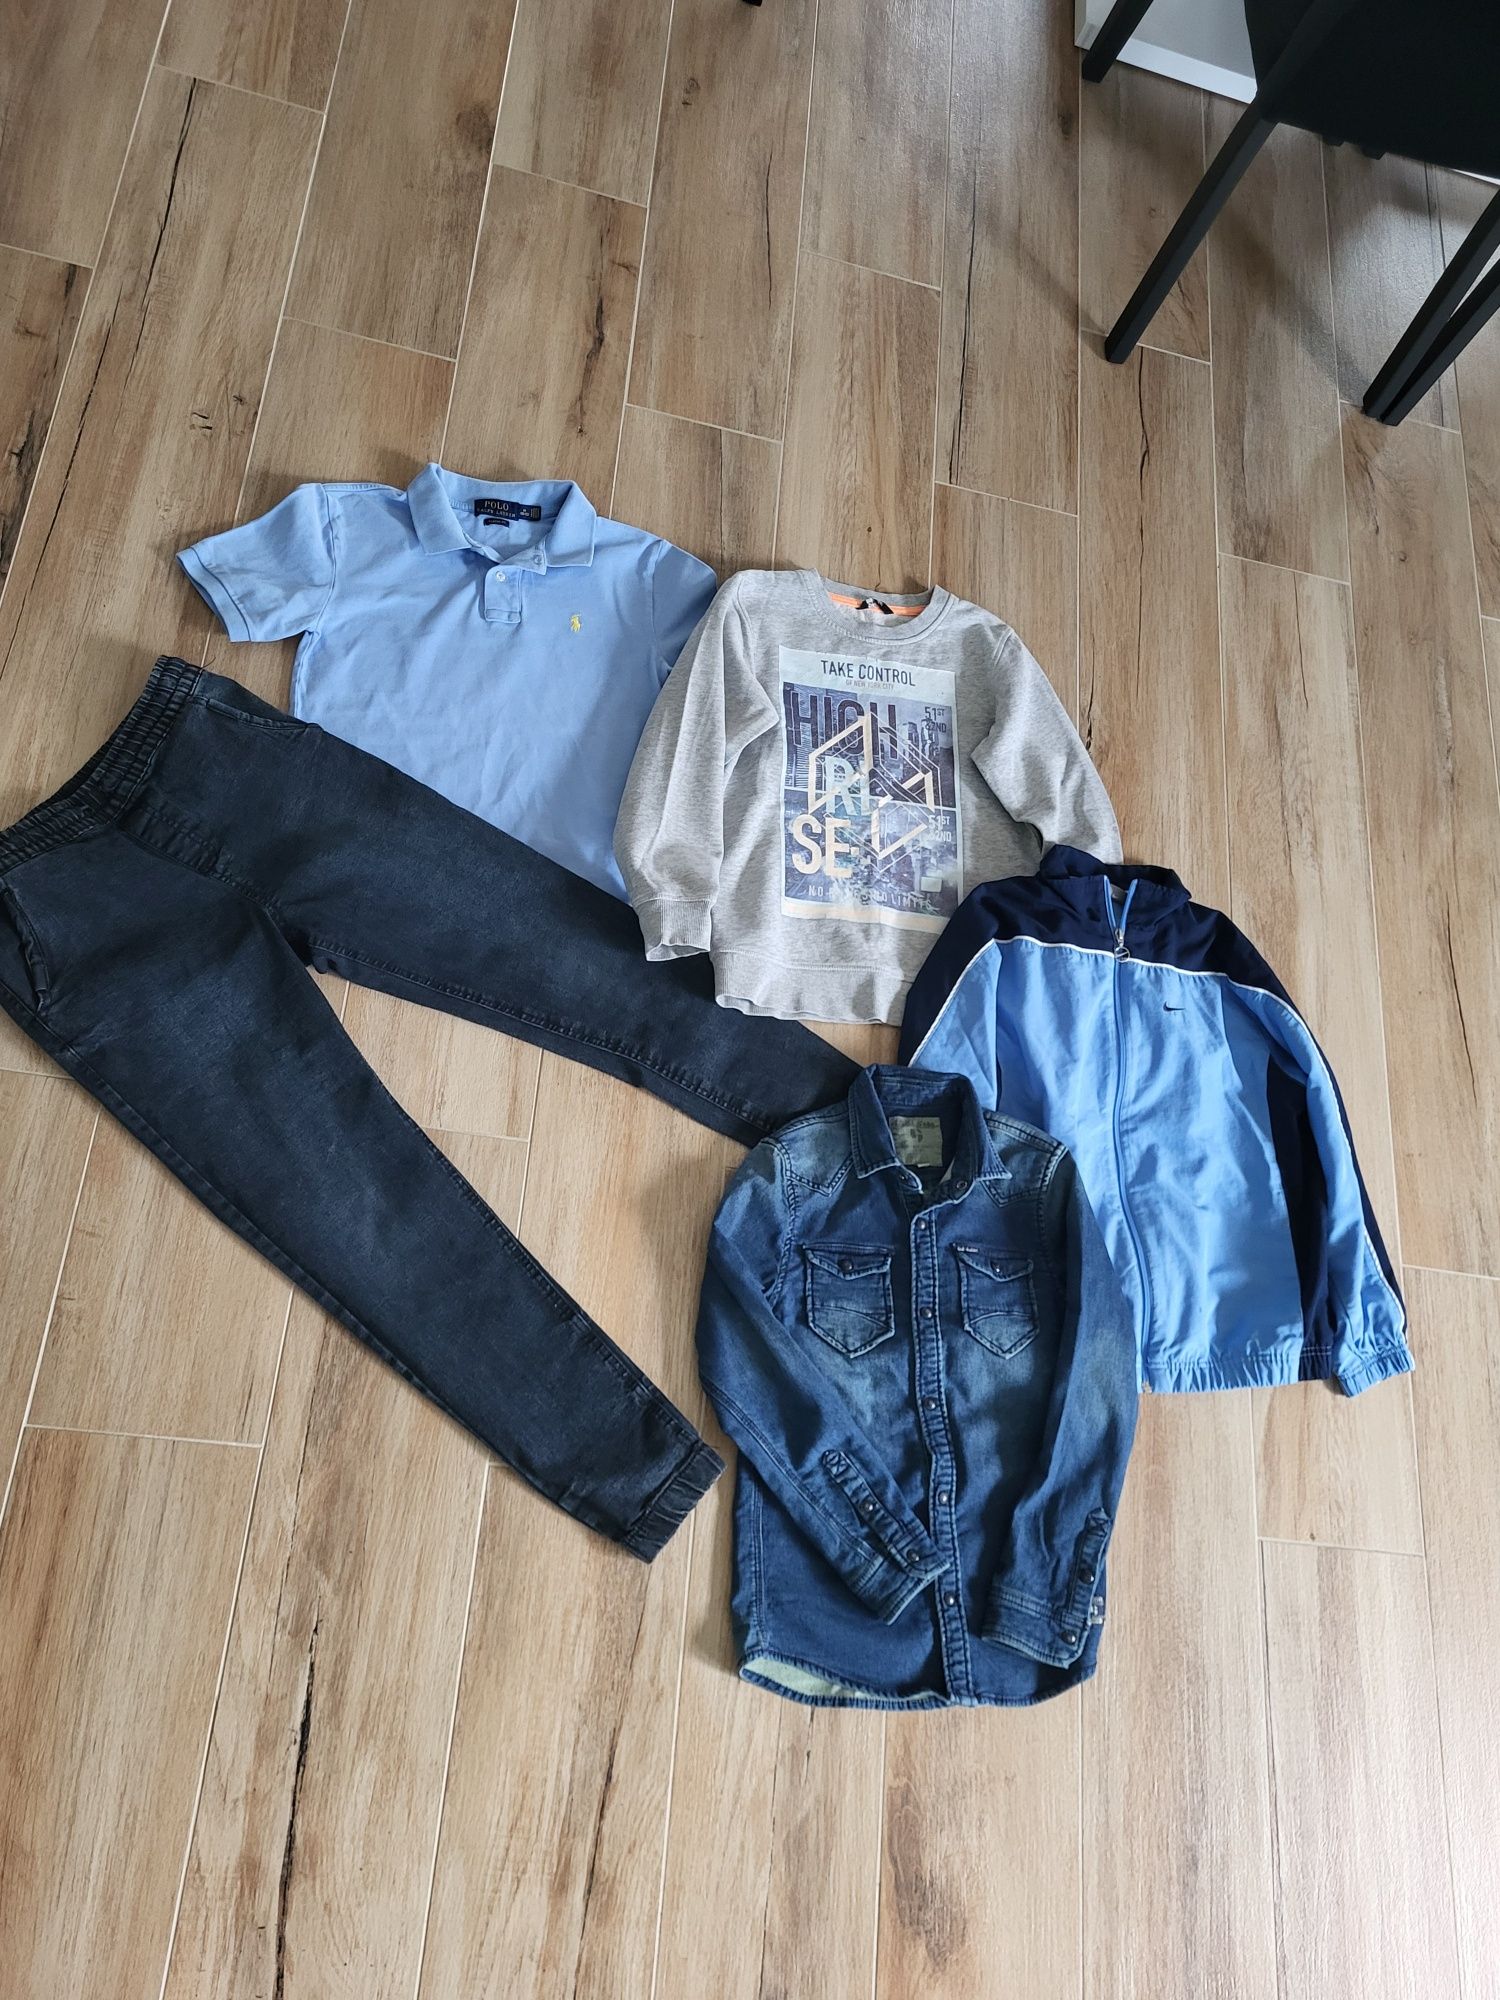 Zestaw ubran dla chłopca 146-152 spodnie bluzy koszula bluzka